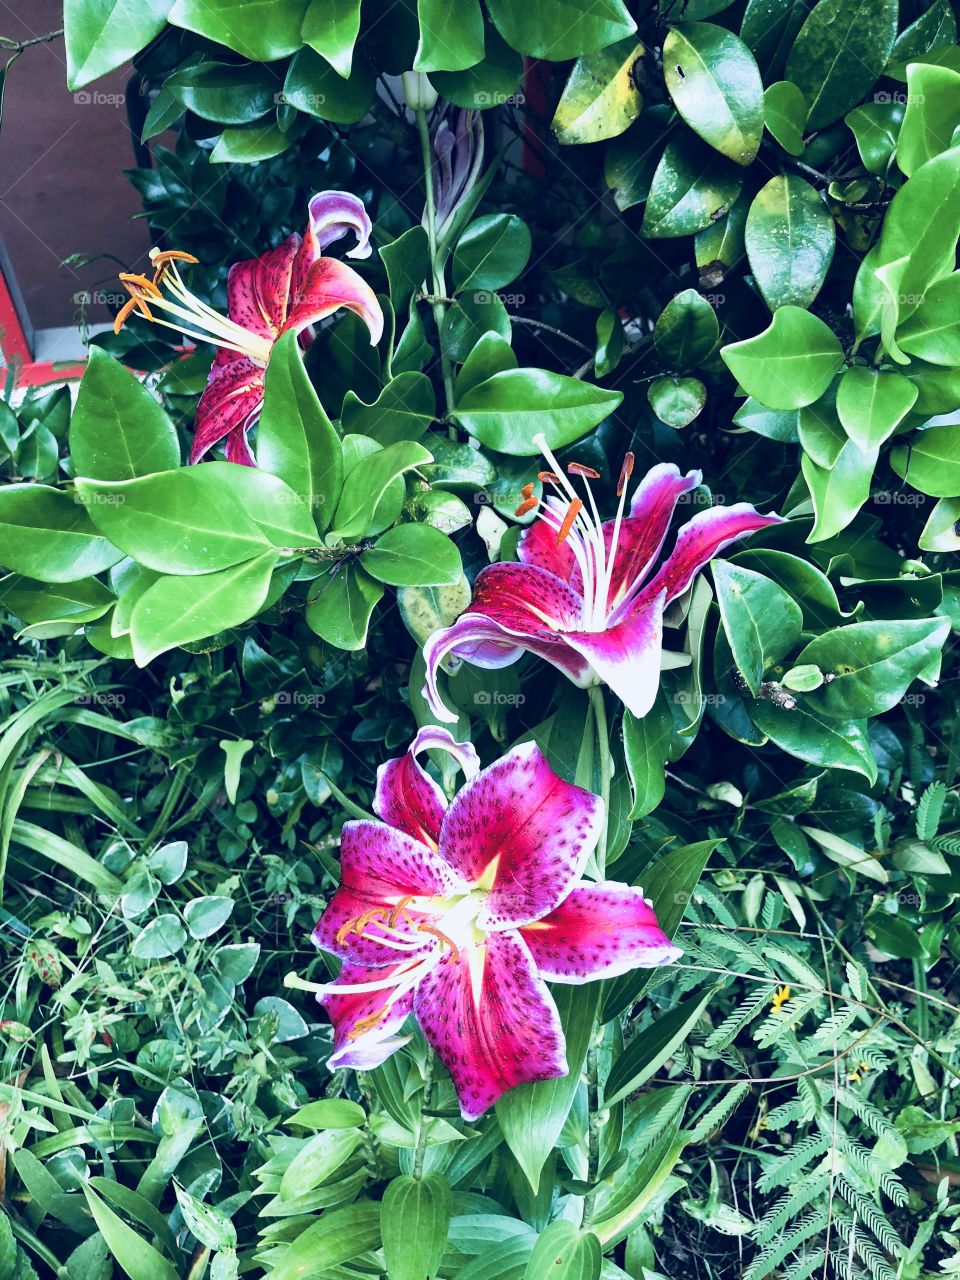 Gorgeous  dark pink stargazer lilies in my garden with much greenery. 